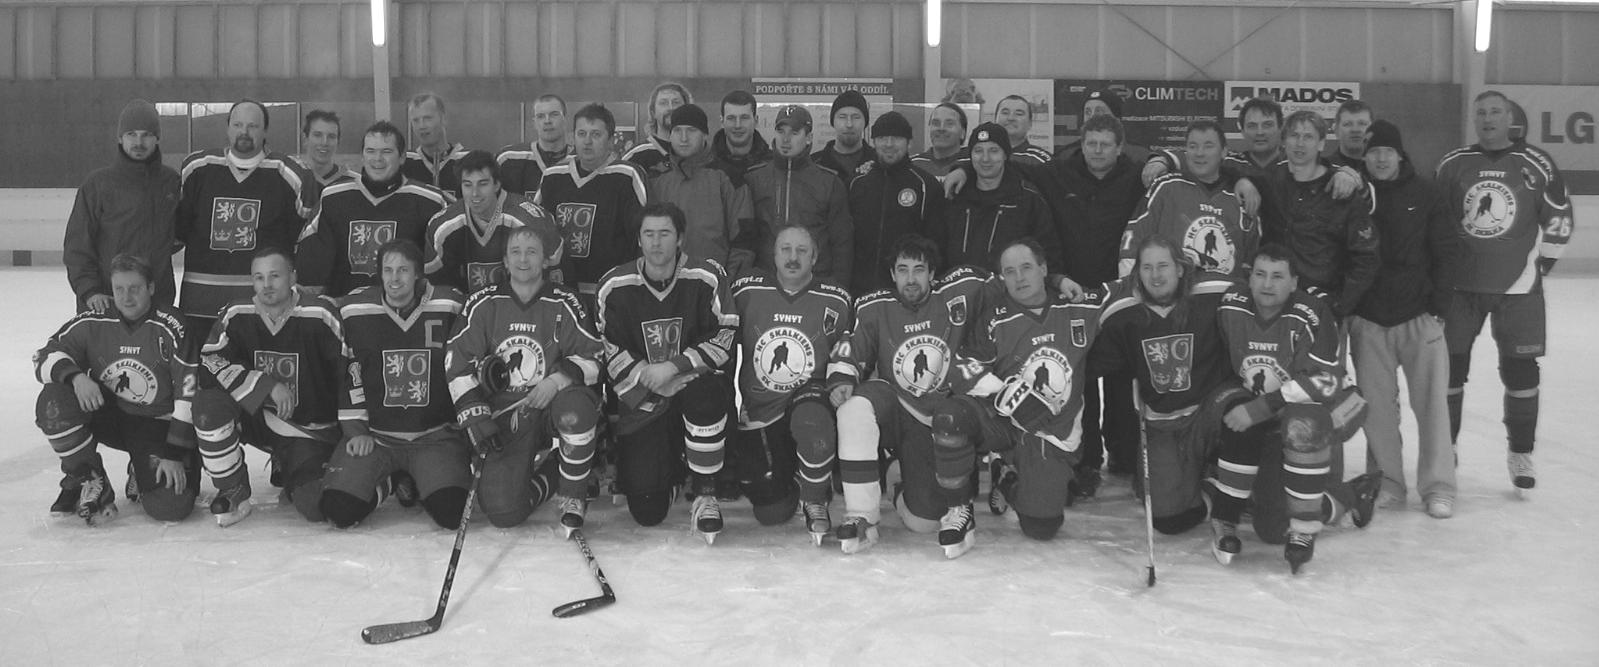 prosince 2011 jsme odehráli na zimním stadionu v Novém Městě přátelské utkání s týmem Medvídci Dobruška a zvítězili jsme 3:0. 11.